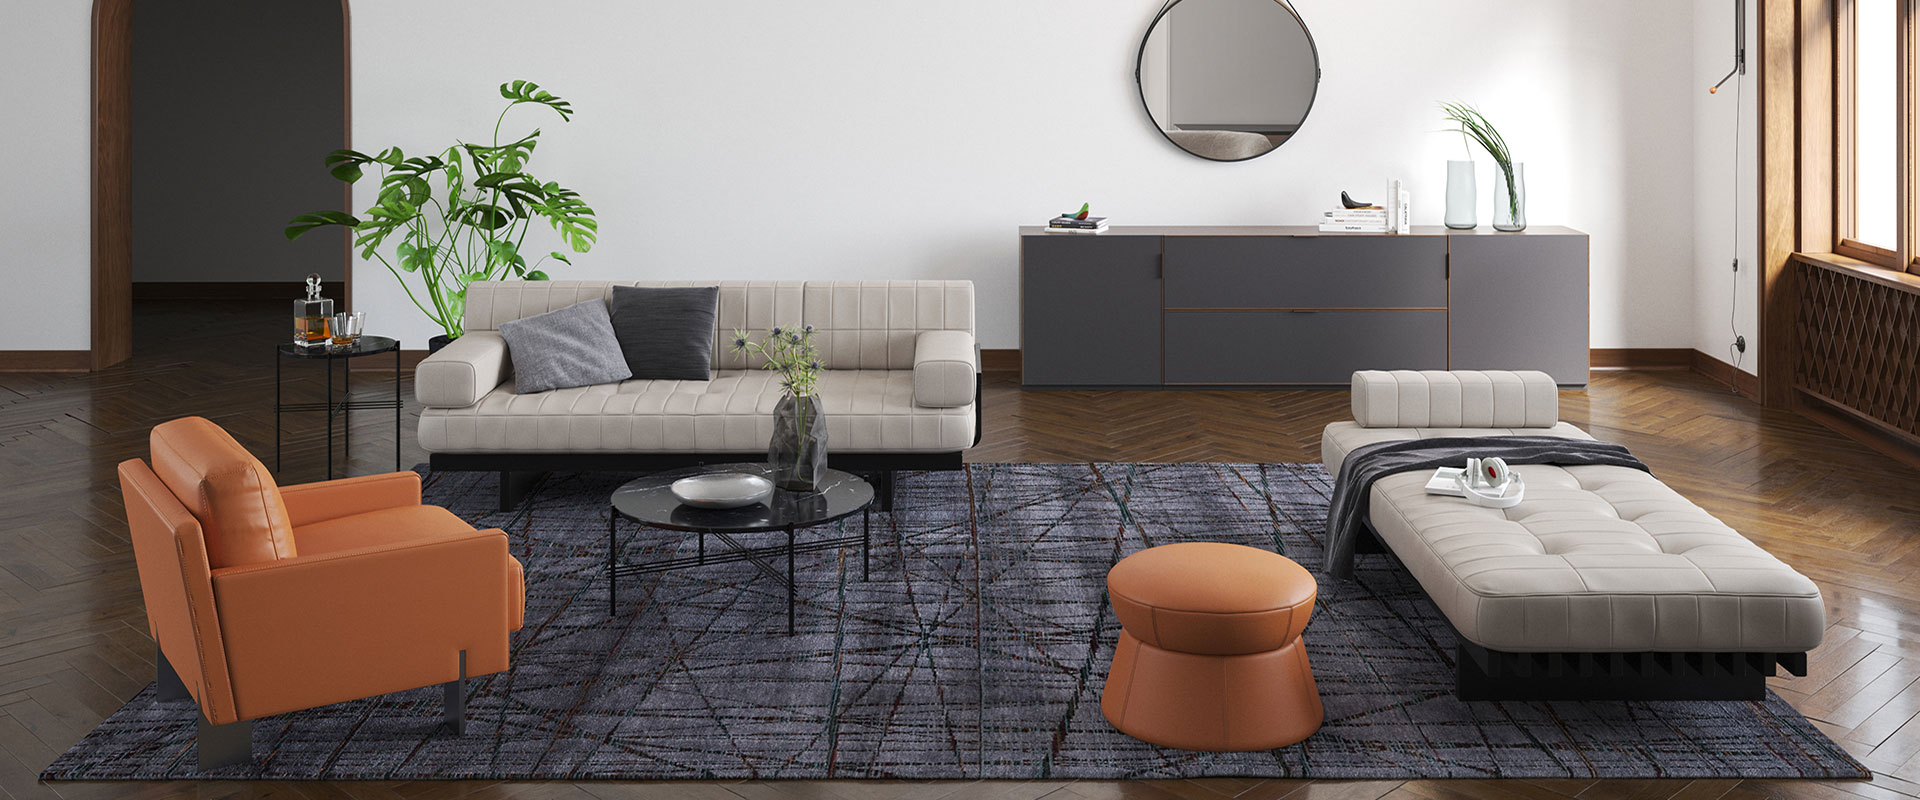 Modernes Wohnzimmer mit beiger Couch, einem orangefarbenen Sessel, dunklem Couchtisch und Fußhocker auf einem mehrfarbigen Teppich, eingefasst von einer Pflanze, einer Konsole mit Dekoration und einem runden Spiegel an der Wand, dunklem Parkettboden, weiß getünchten Wänden und Fenster mit Holzrahmen.